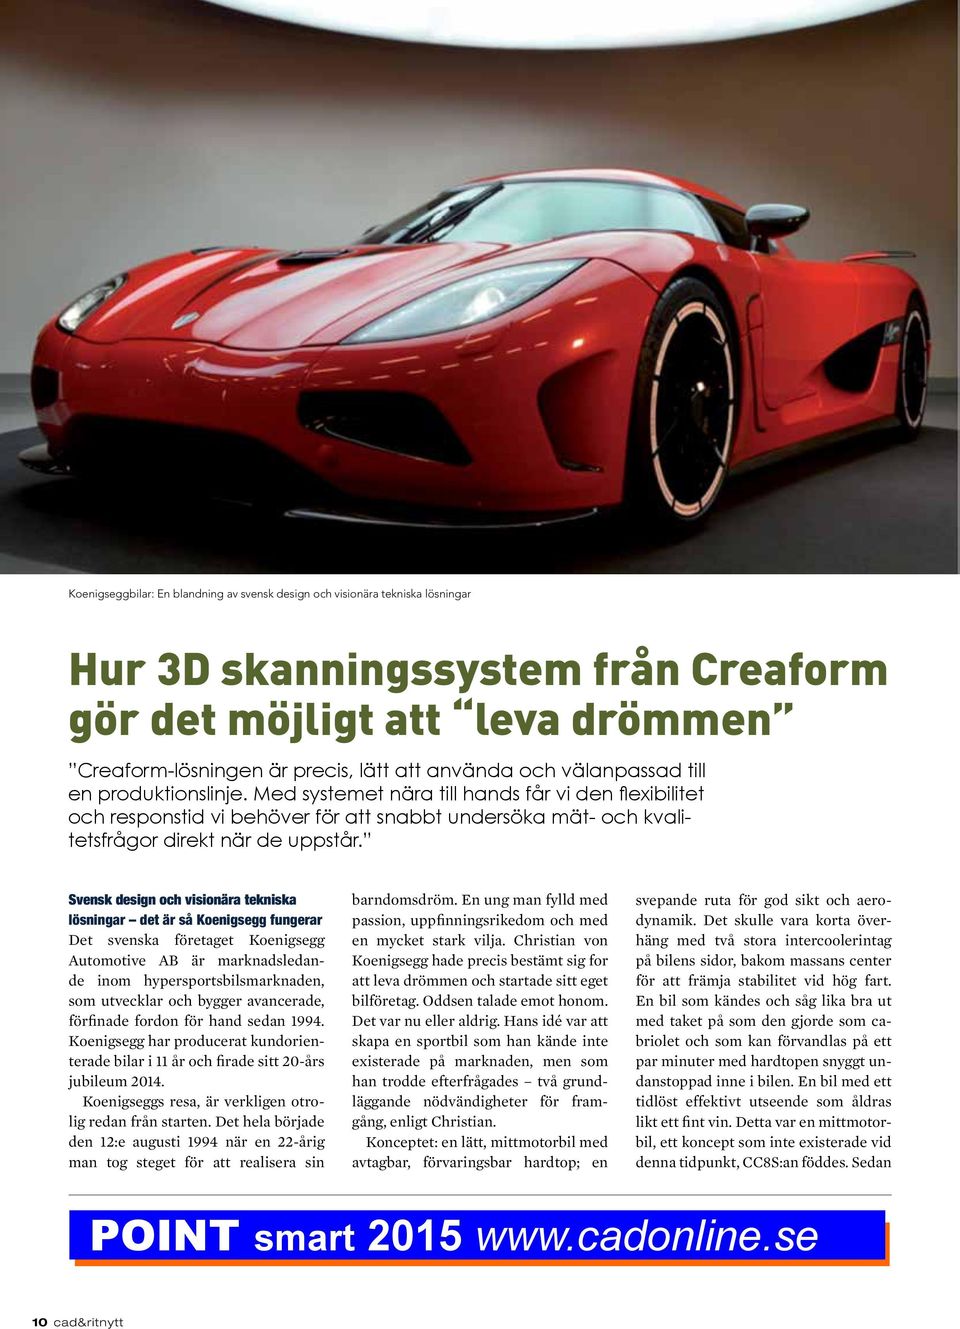 Svensk design och visionära tekniska lösningar det är så Koenigsegg fungerar Det svenska företaget Koenigsegg Automotive AB är marknadsledande inom hypersportsbilsmarknaden, som utvecklar och bygger